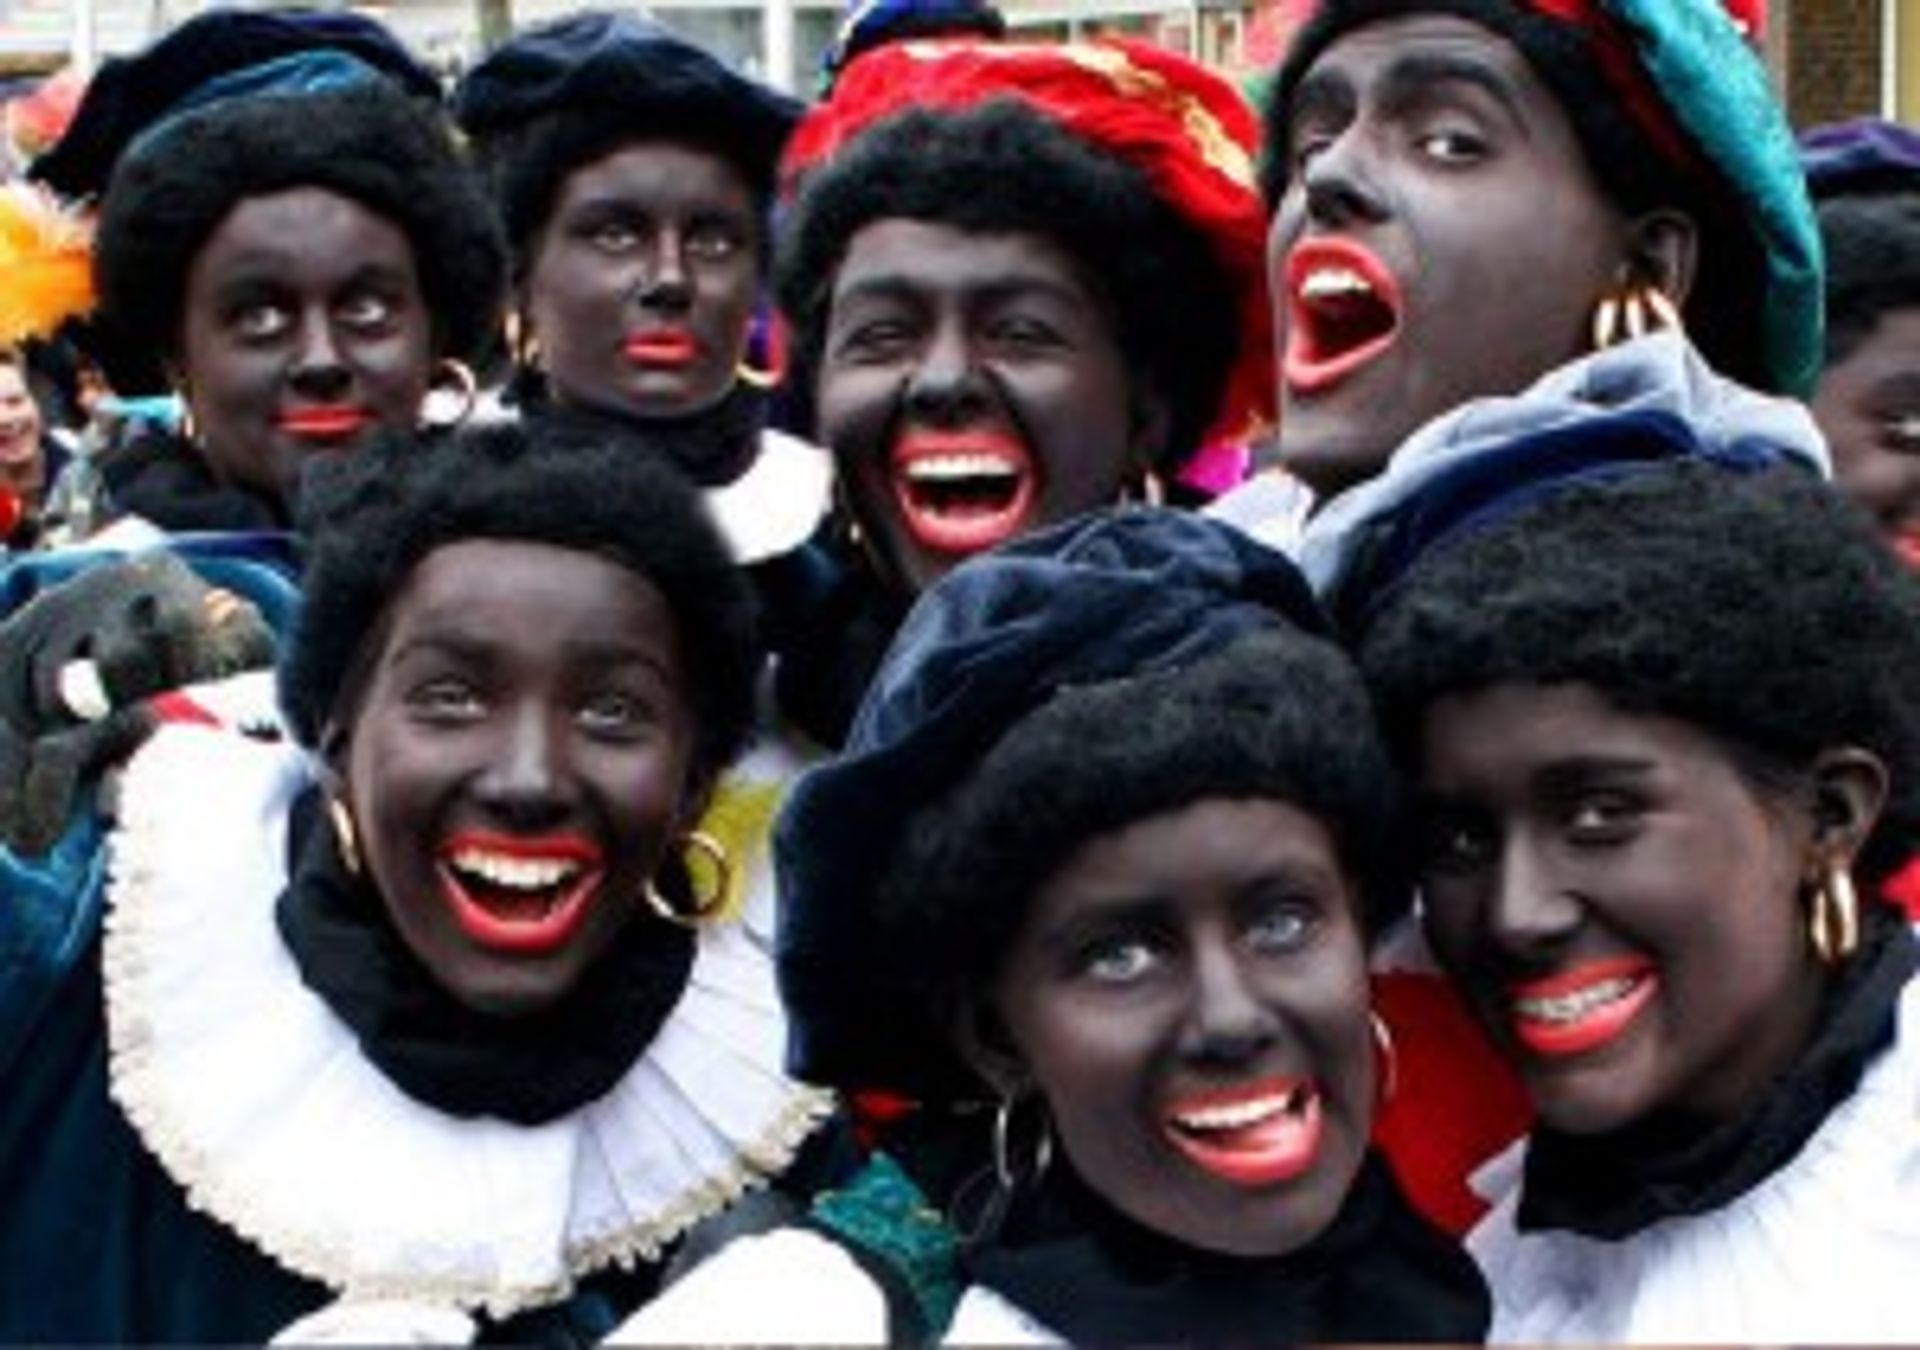 Krankzinnigheid Oxideren tekort Ook zonder het zwart van Piet is Sinterklaas een feest - Joop - BNNVARA